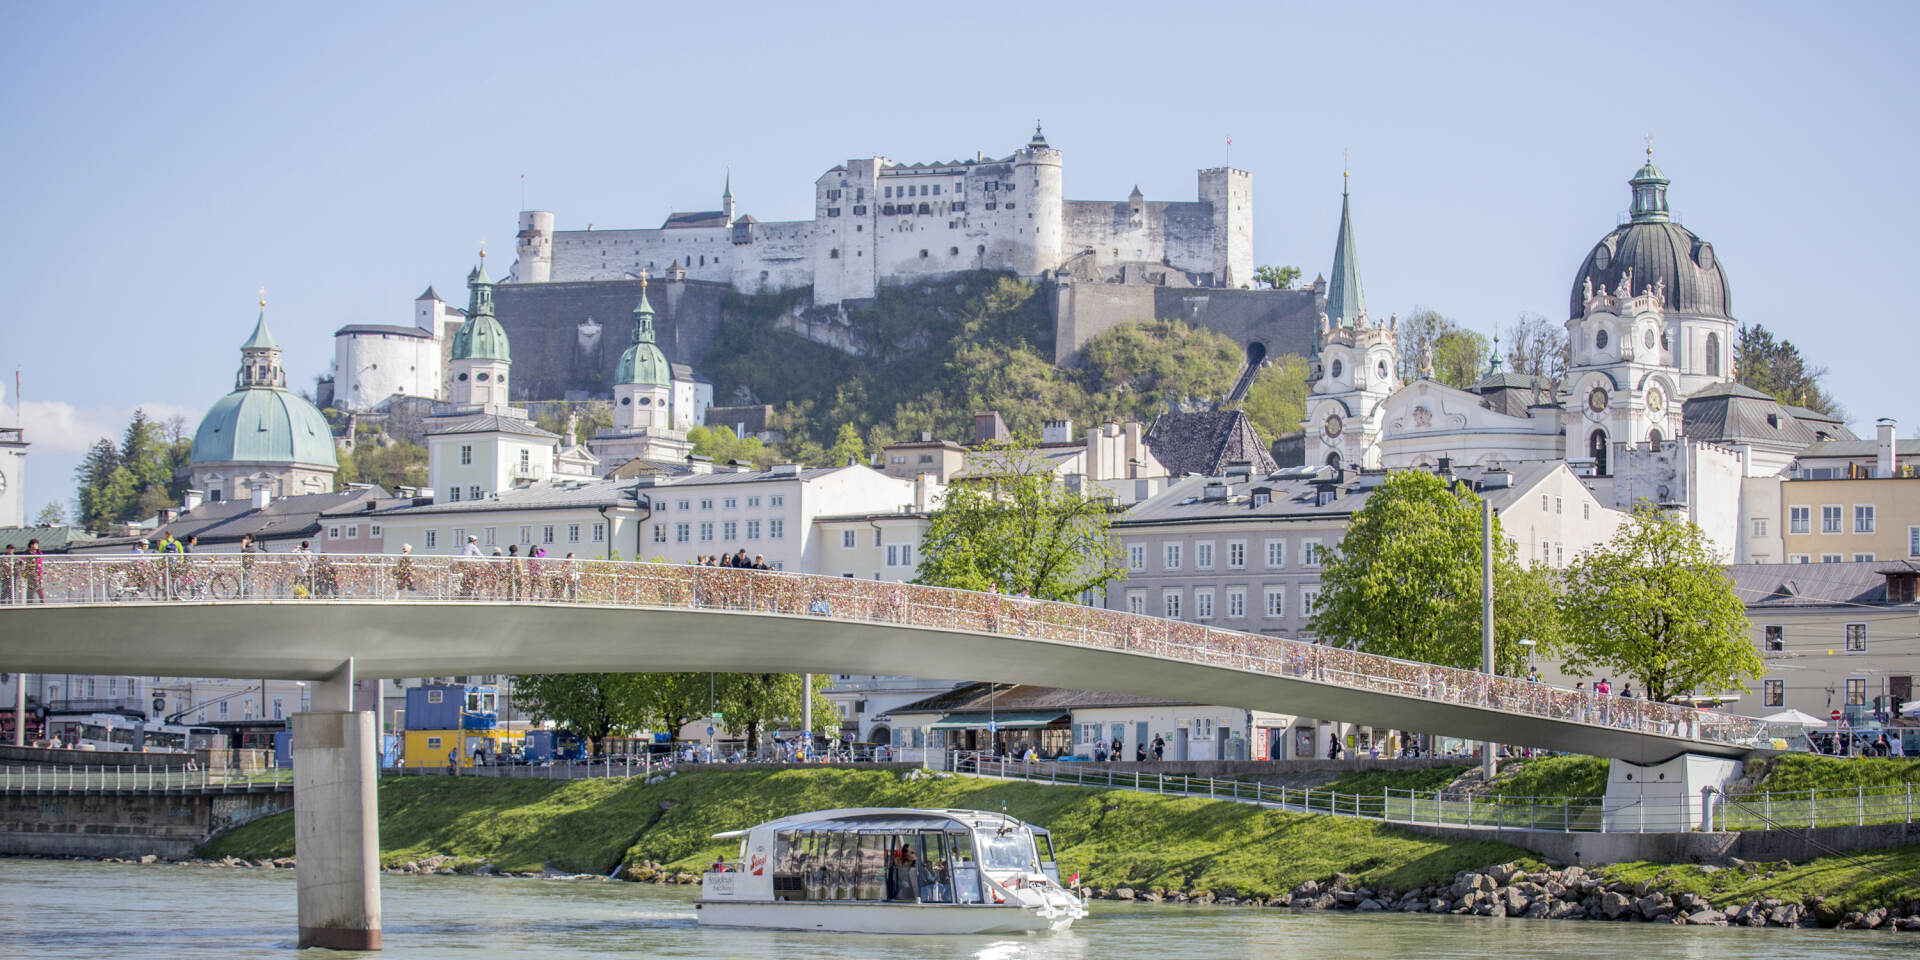 Salzburg Panorama Stadtrundfahrt mit Bus und Schiff - Schiff Amadeus © salzburghighlights.com